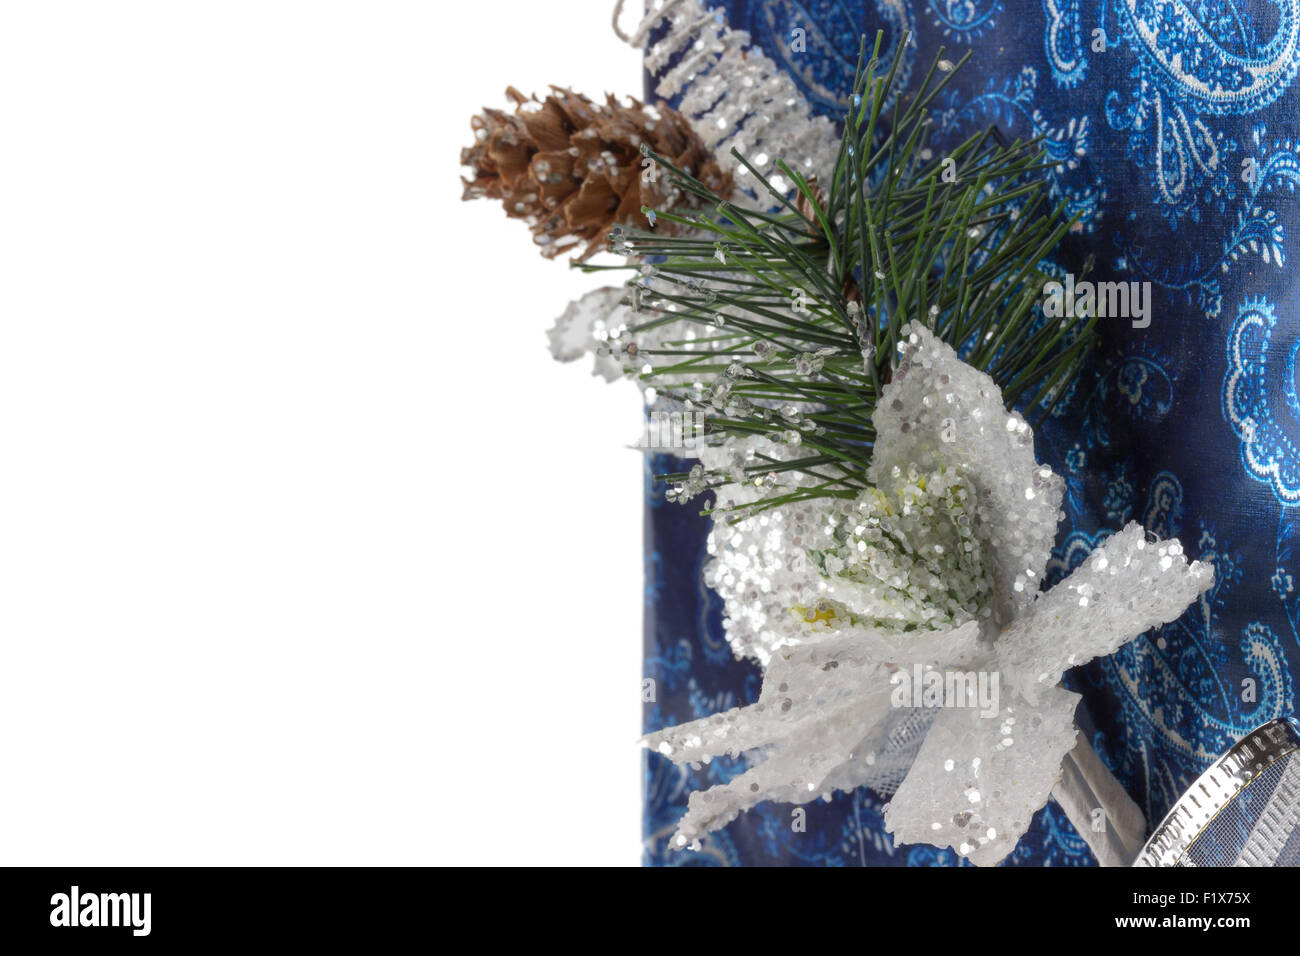 Carte de vœux de Noël bleu sur le fond blanc. Banque D'Images